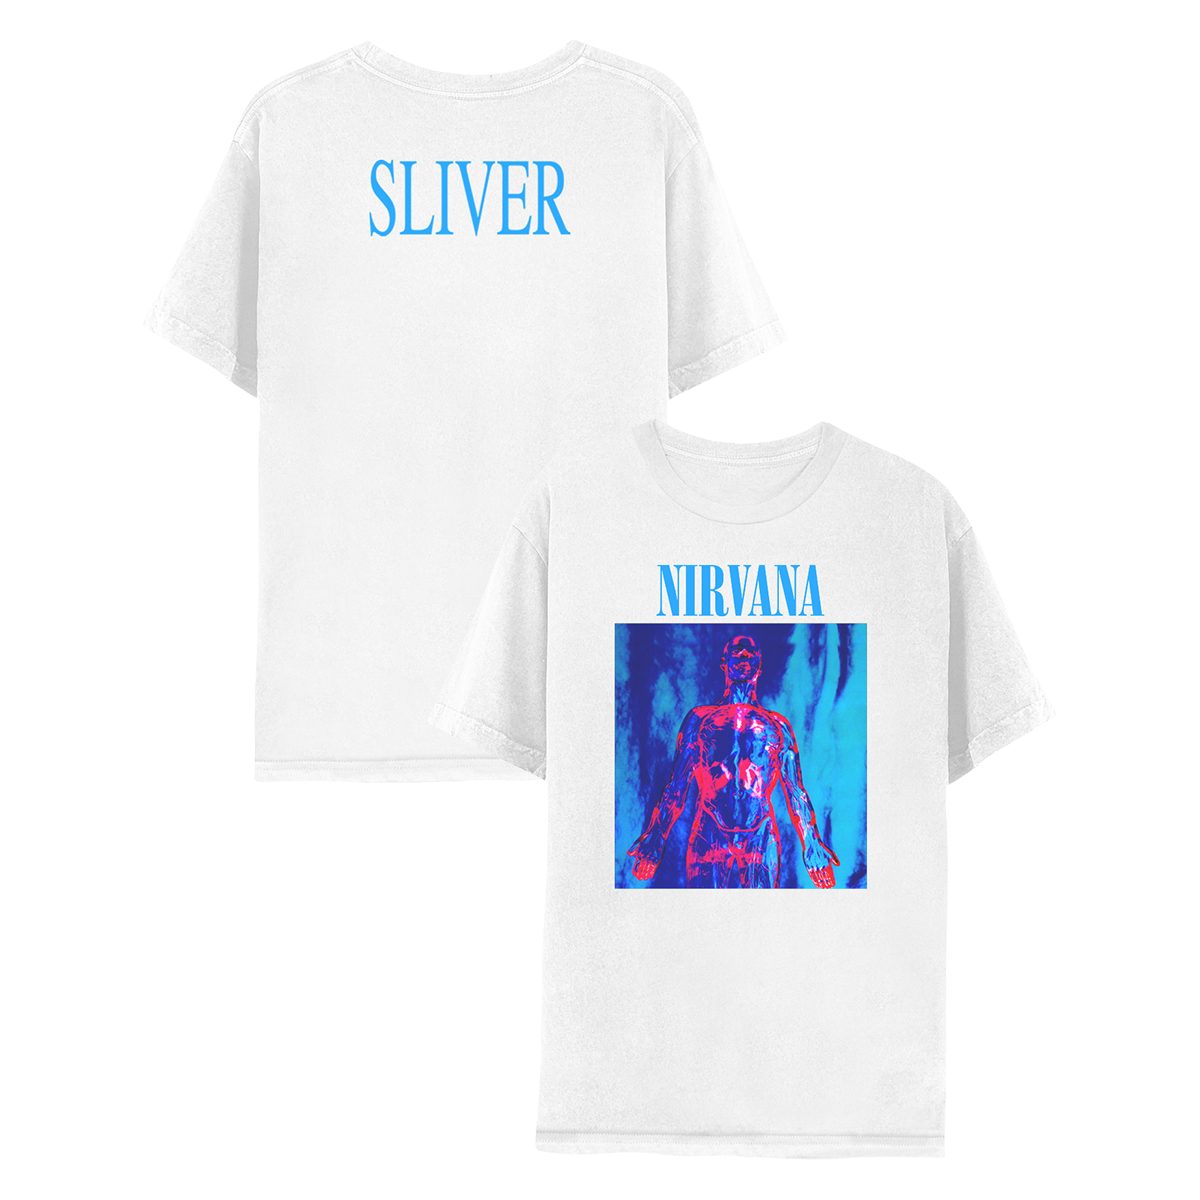 nirvana shirt white